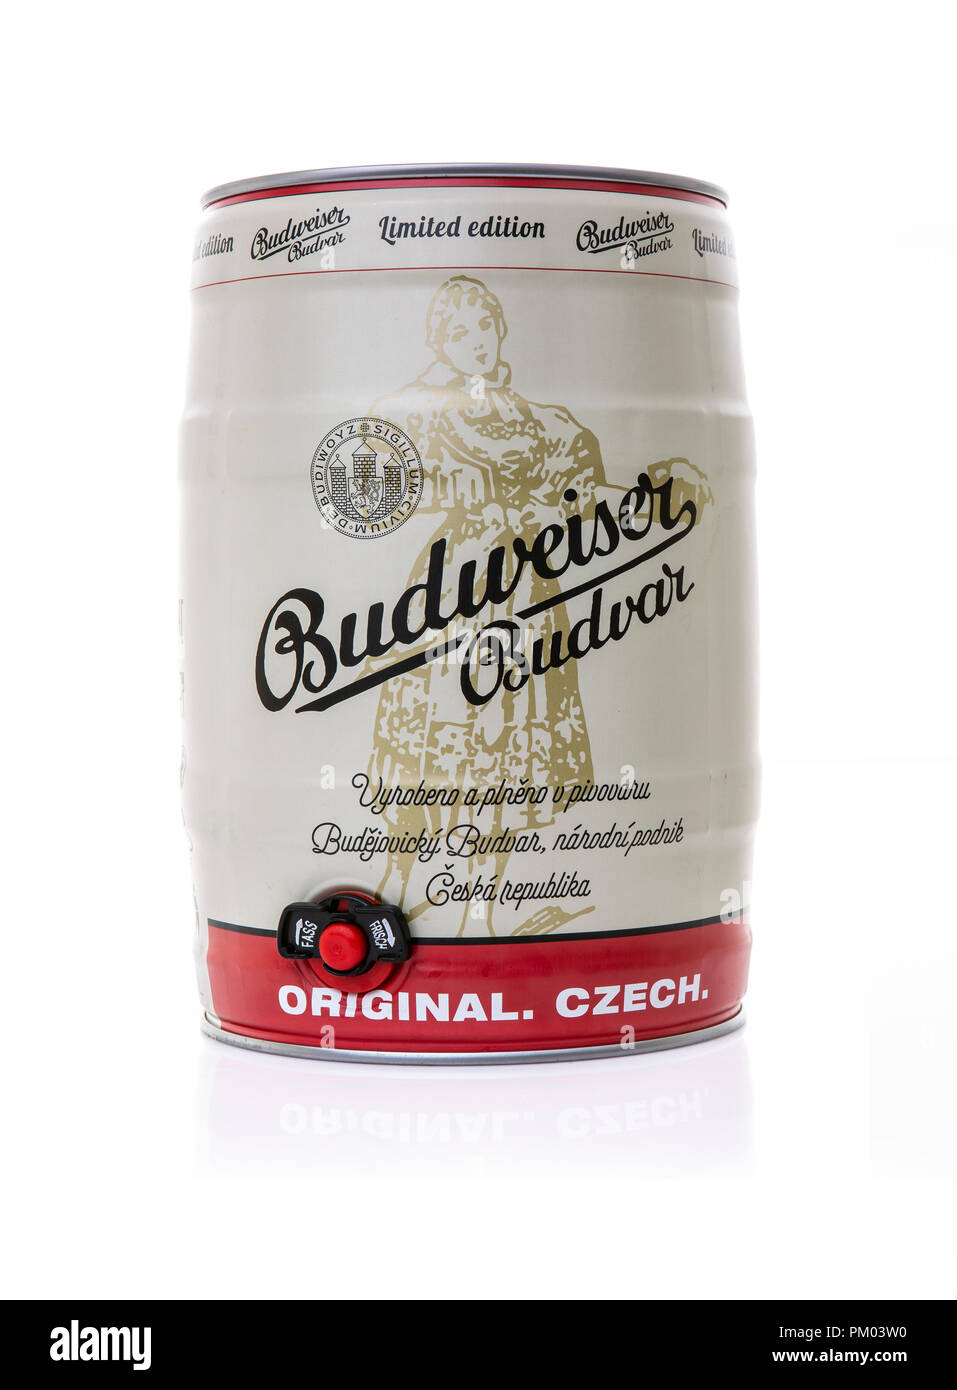 SWINDON, UK - 9 septembre 2018 : Budweiser Budvar fût de bière blonde sur fond blanc Banque D'Images